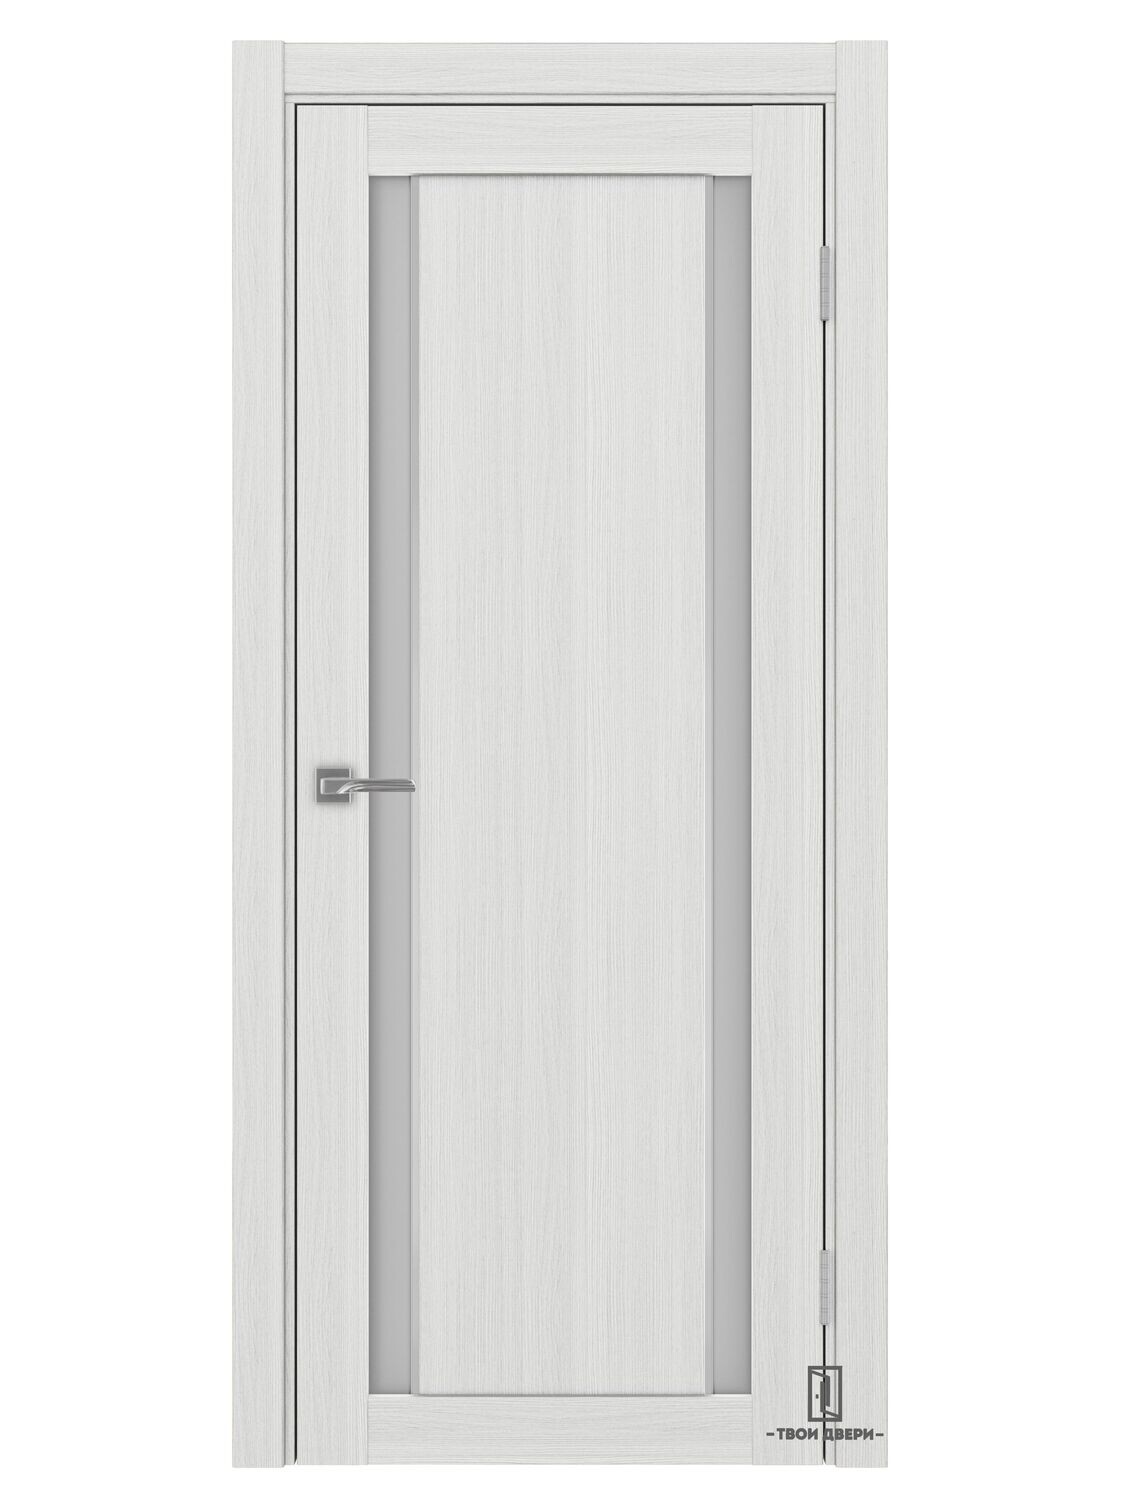 Дверь межкомнатная АПС 522.212 молдинг, ясень серебристый